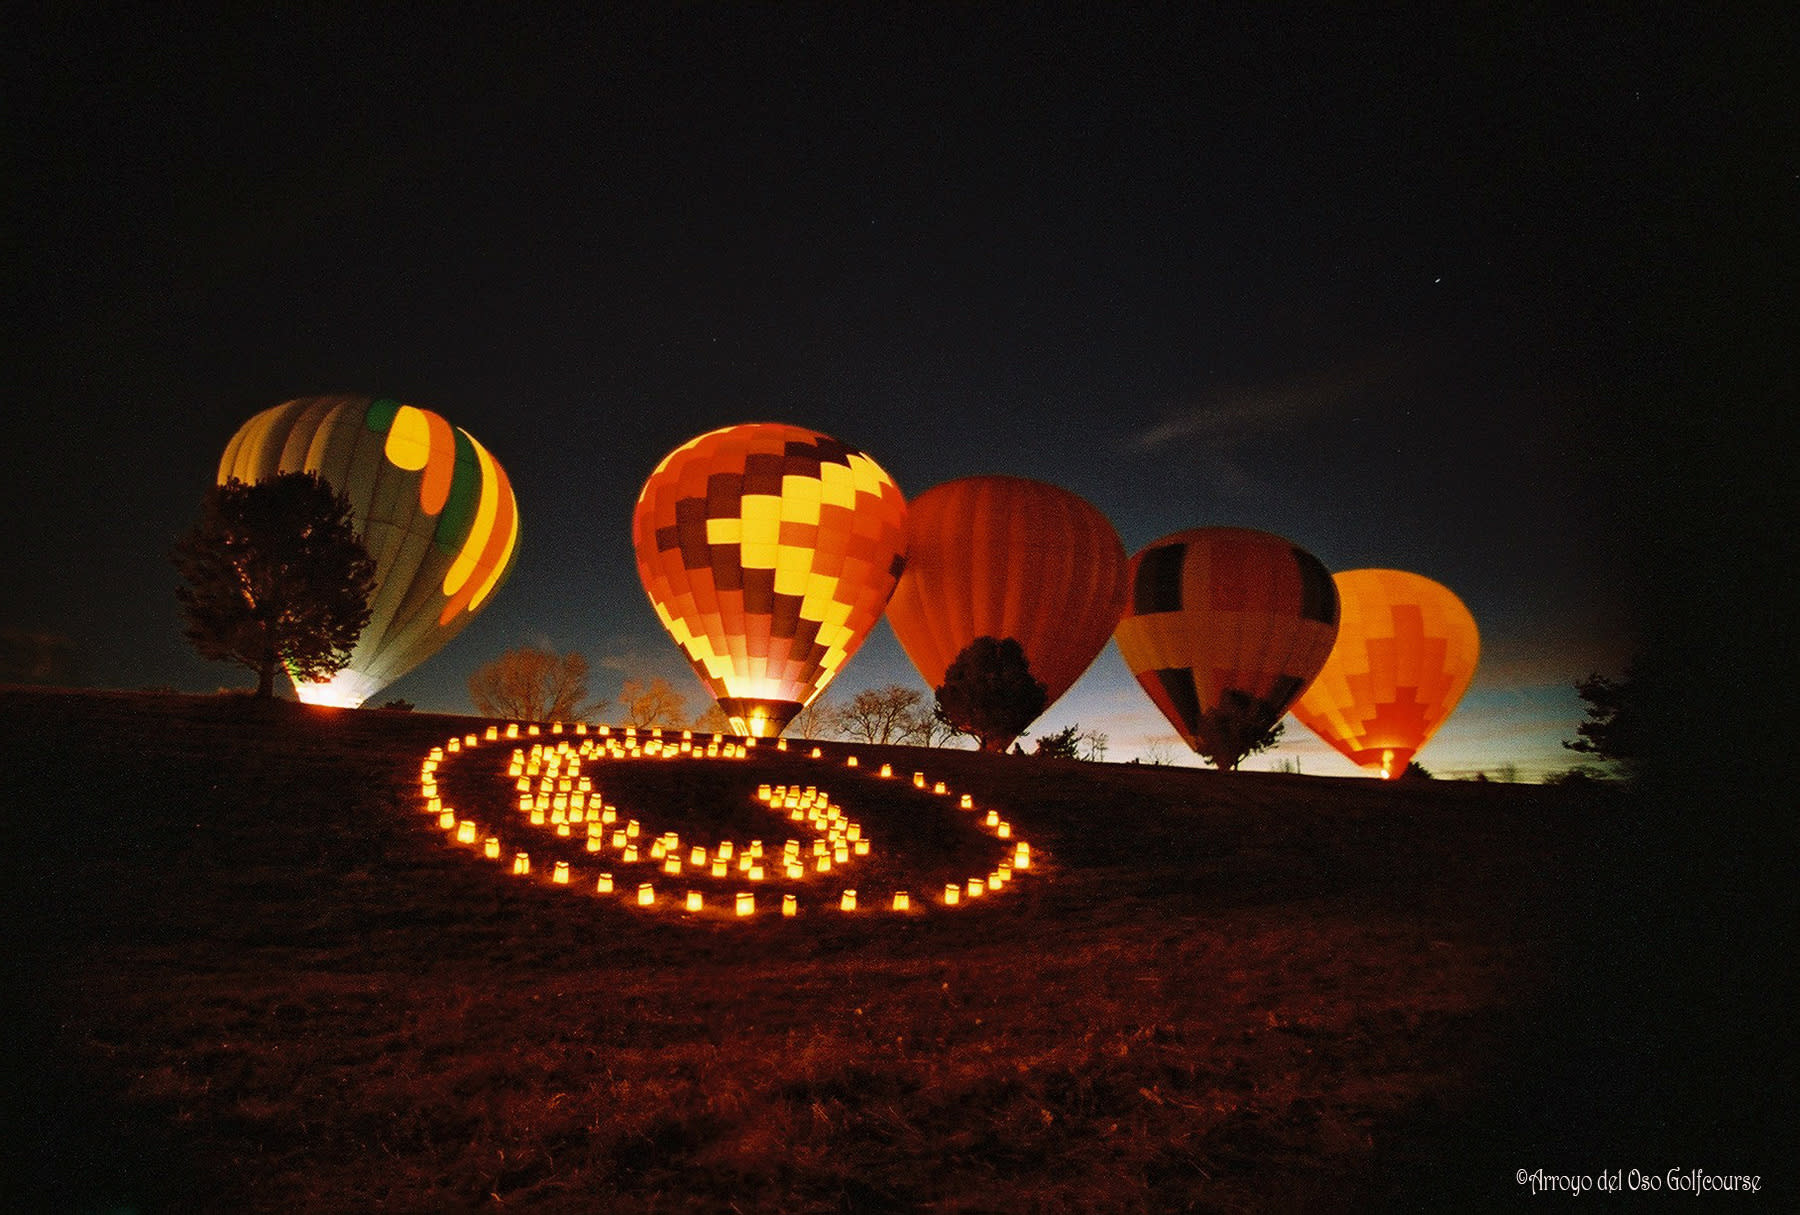 Arroyo del Oso Balloon Glow on Christmas Eve in Albuquerque